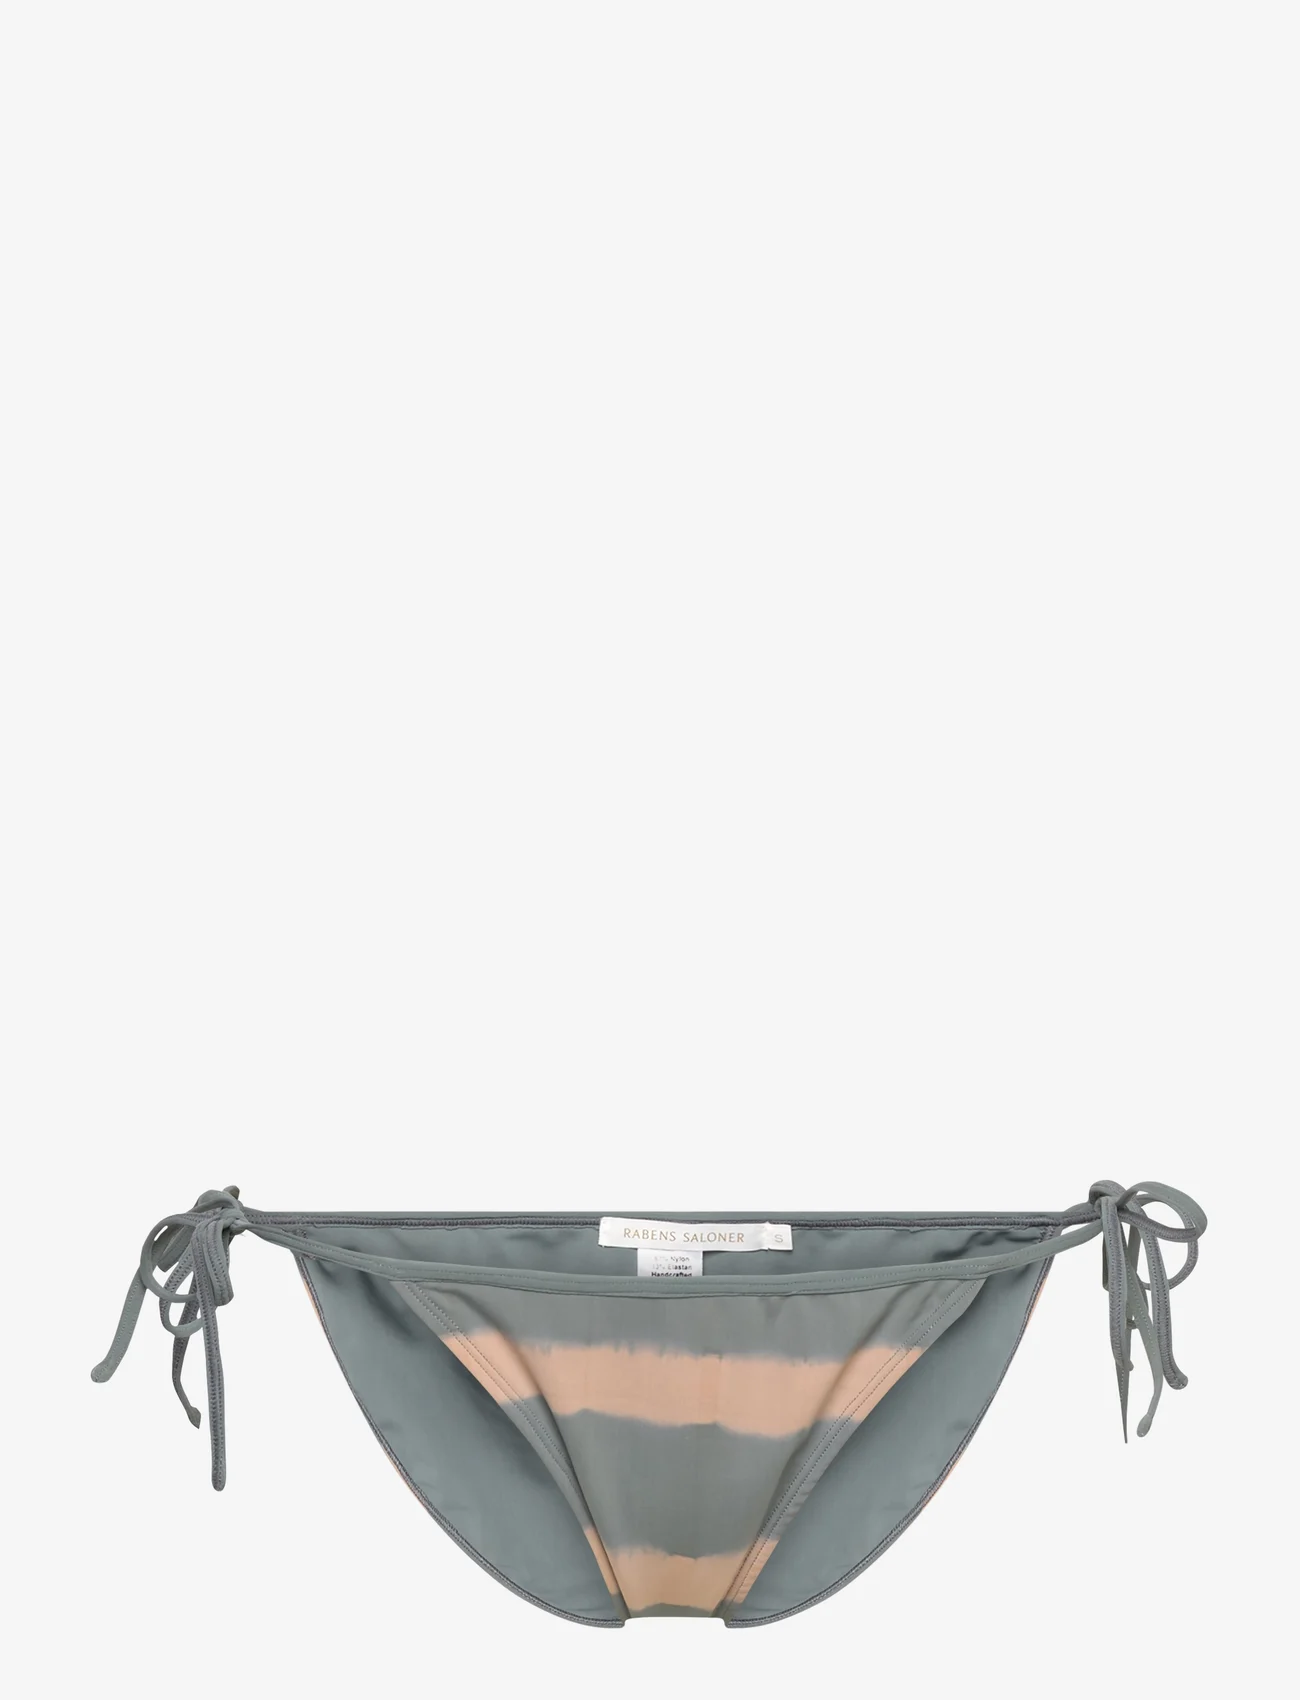 Rabens Saloner - Metha - side tie bikinis - grey/nougat - 0